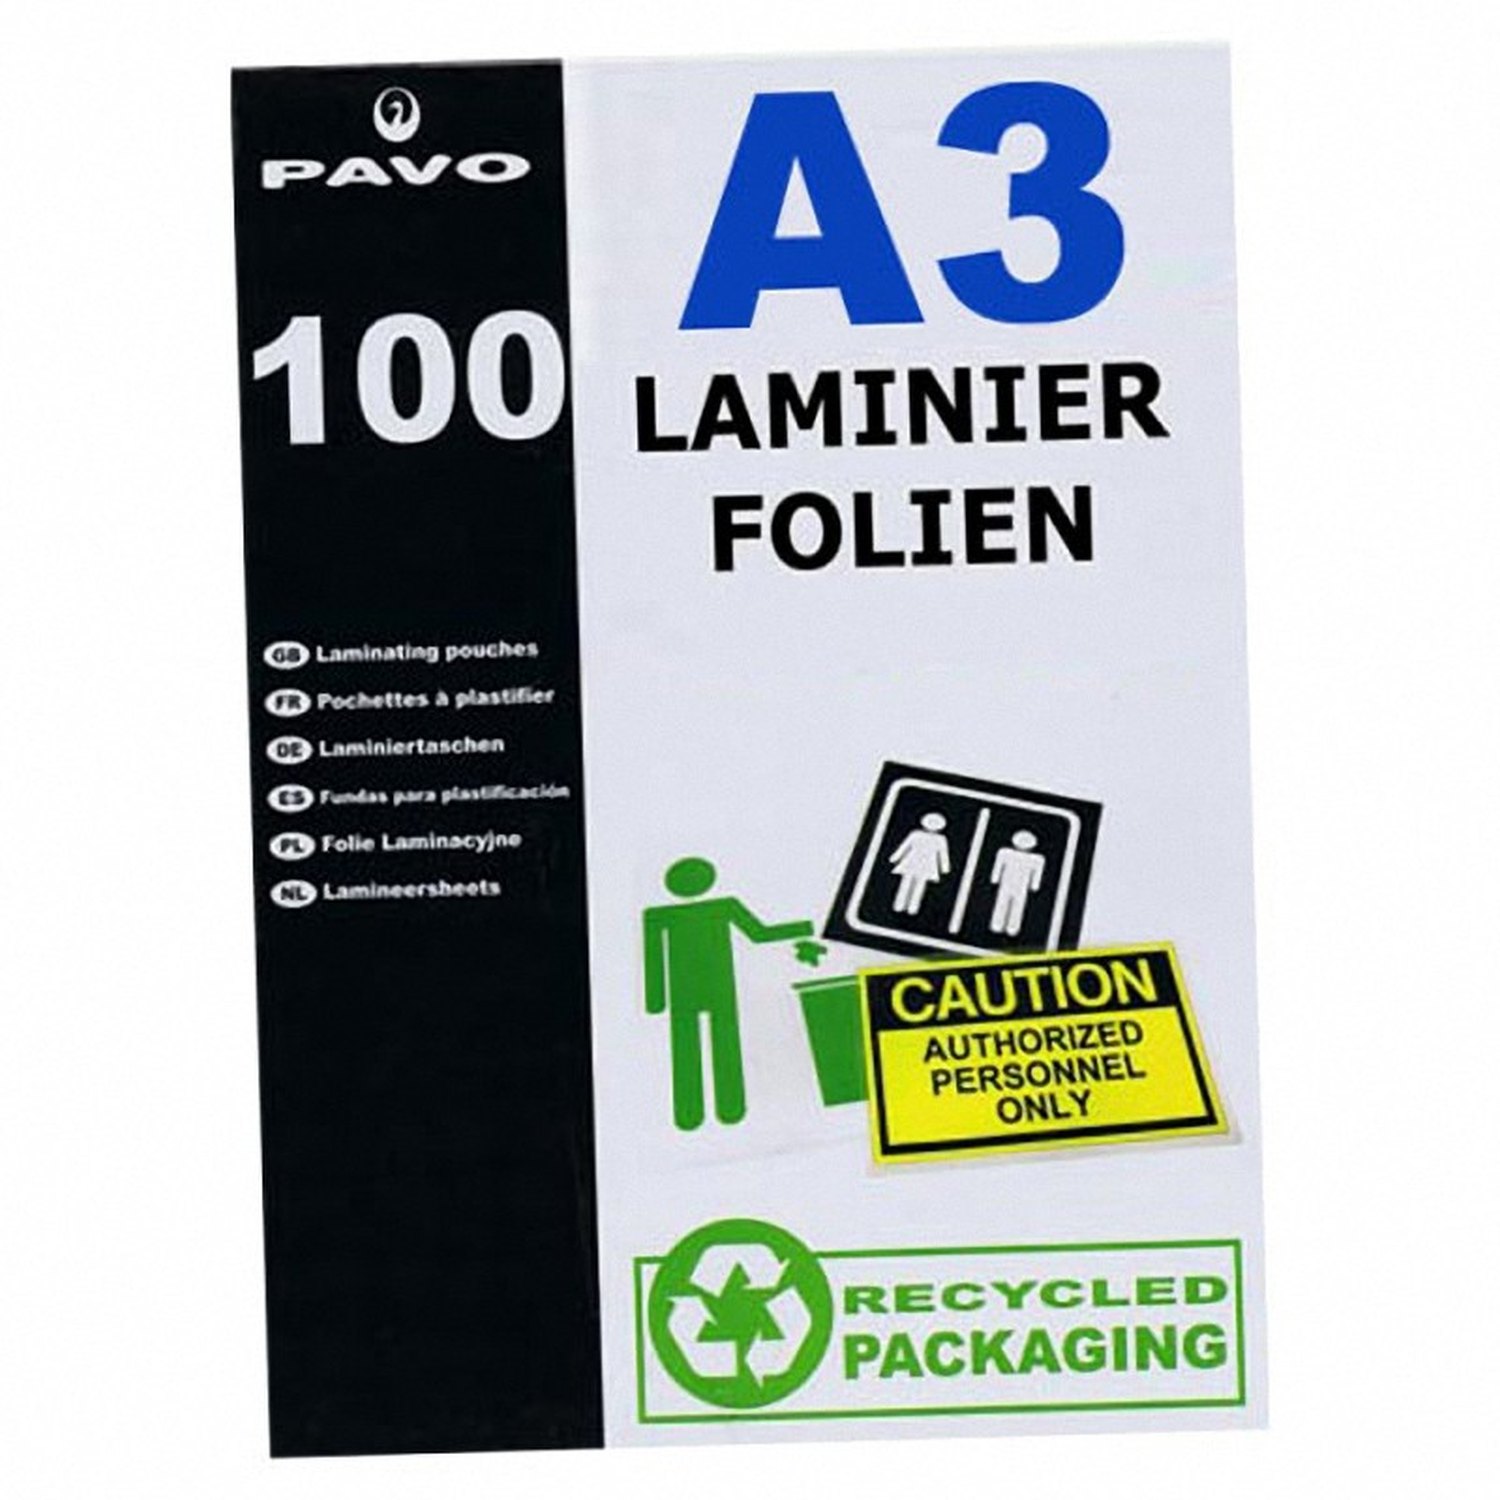 PAVO Laminierfolien A3, 303 x 426mm, 2x  75/80 mic, Hochglanz, 100 Stk.